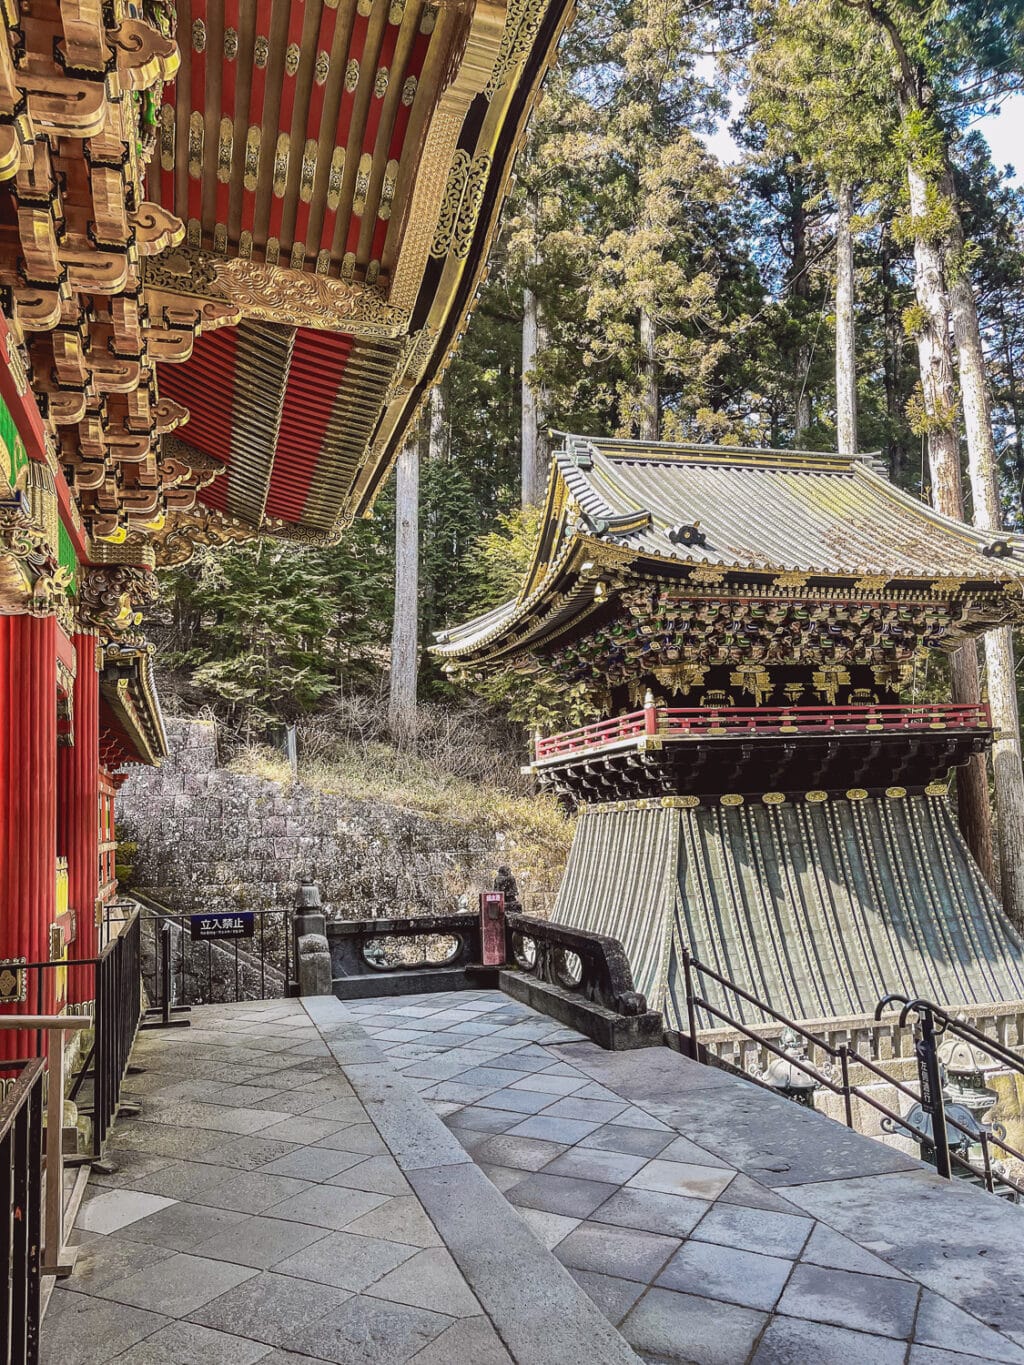 Iemitsu Mausoleum (Taiyuin) in Nikko